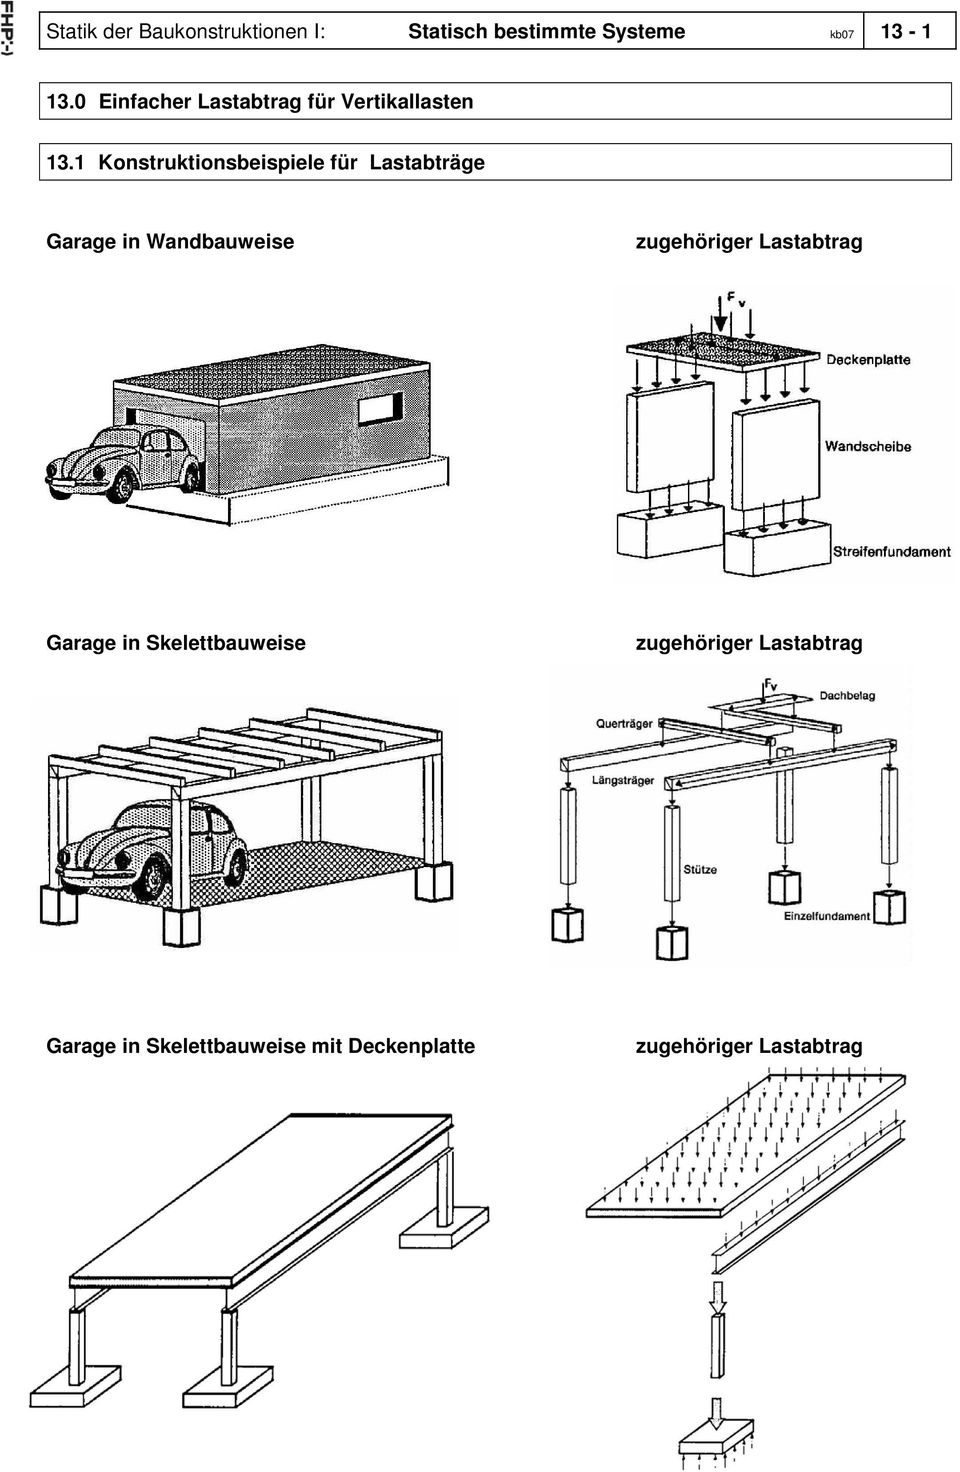 1 Konstruktionsbeispiele für Lastabträge Garage in Wandbauweise zugehöriger